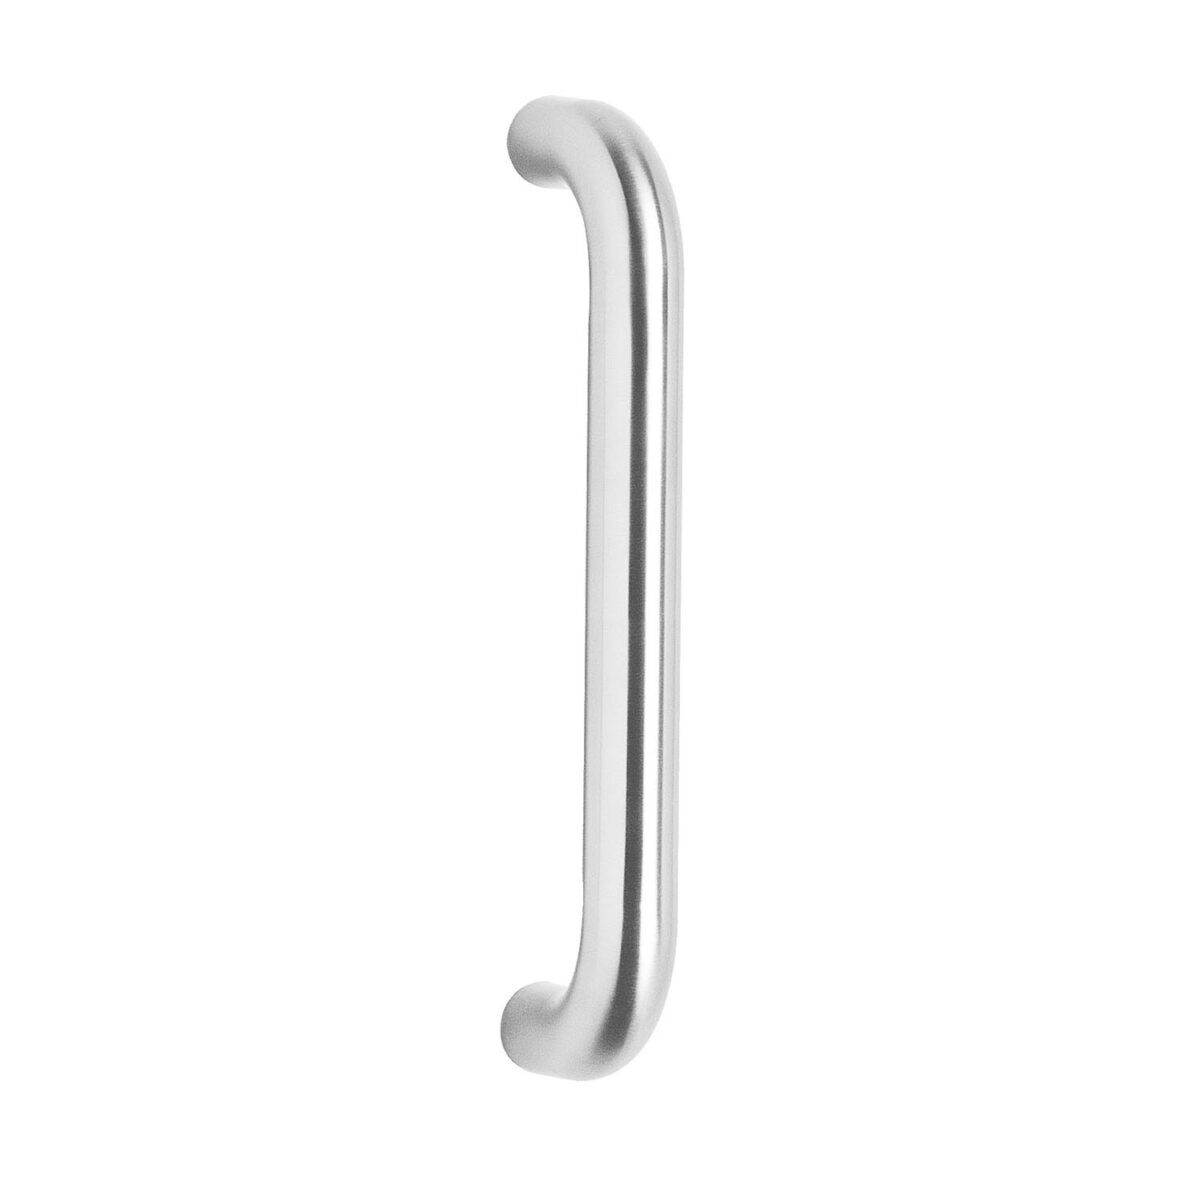 Intersteel Door handles 425 mm U shape brushed stainless steel